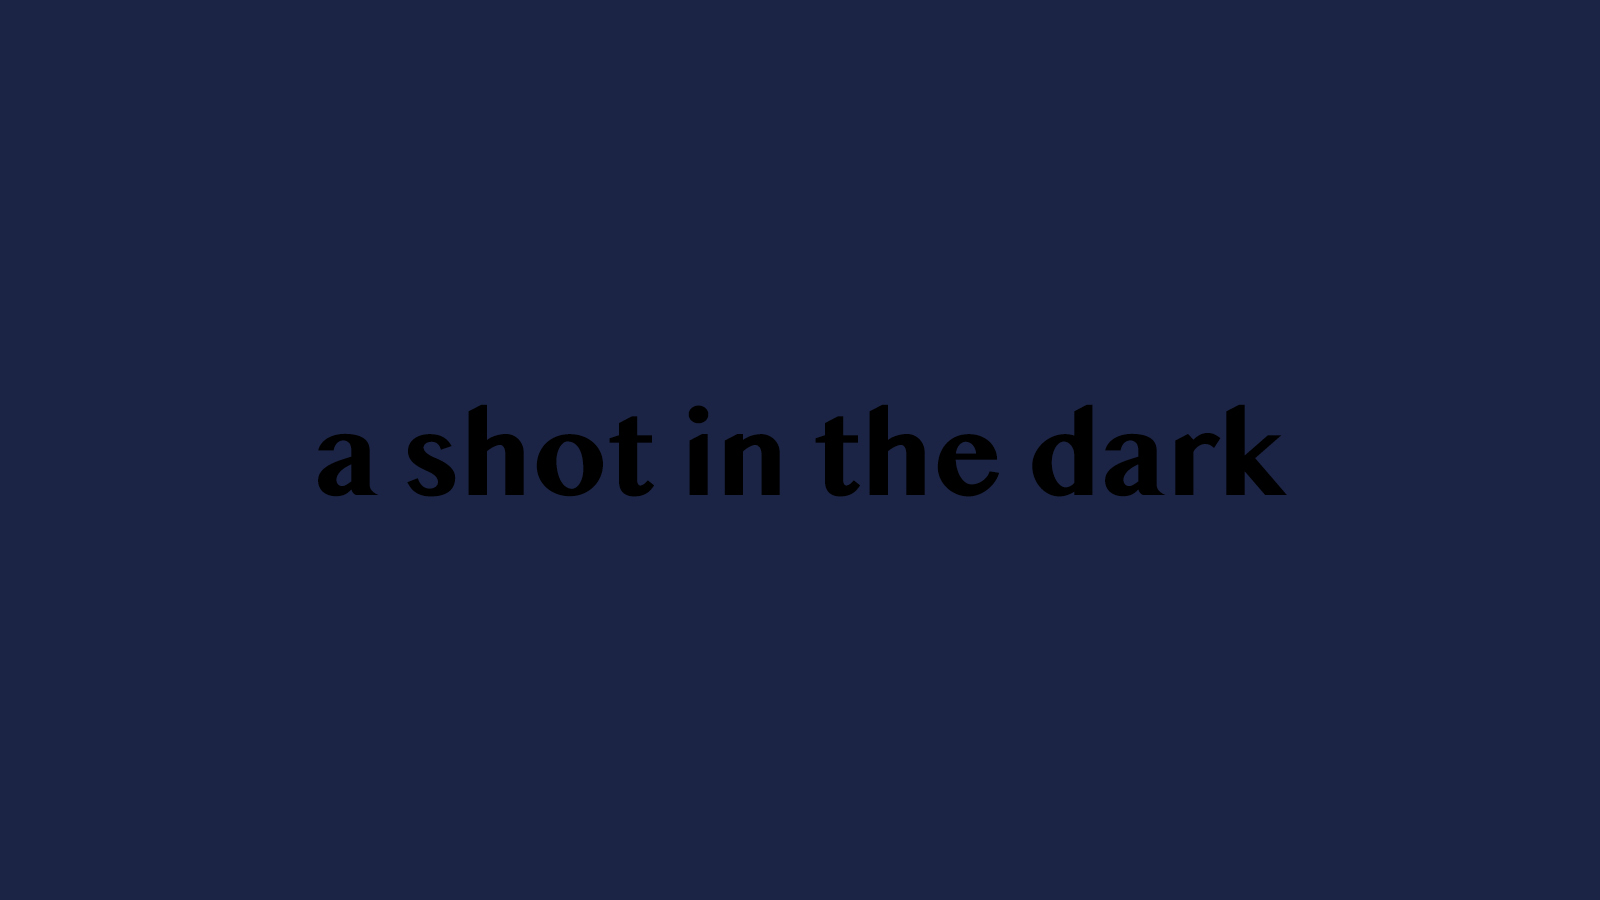 Auf dunkelblauem, fast schwarzem, Hintergrund ist der Schriftzug "a shot in the dark" in schwarzen Buchstaben zu lesen. Der Kontrast zum Hintergrund ist so klein, dass der Schriftzug fast verschwindet.